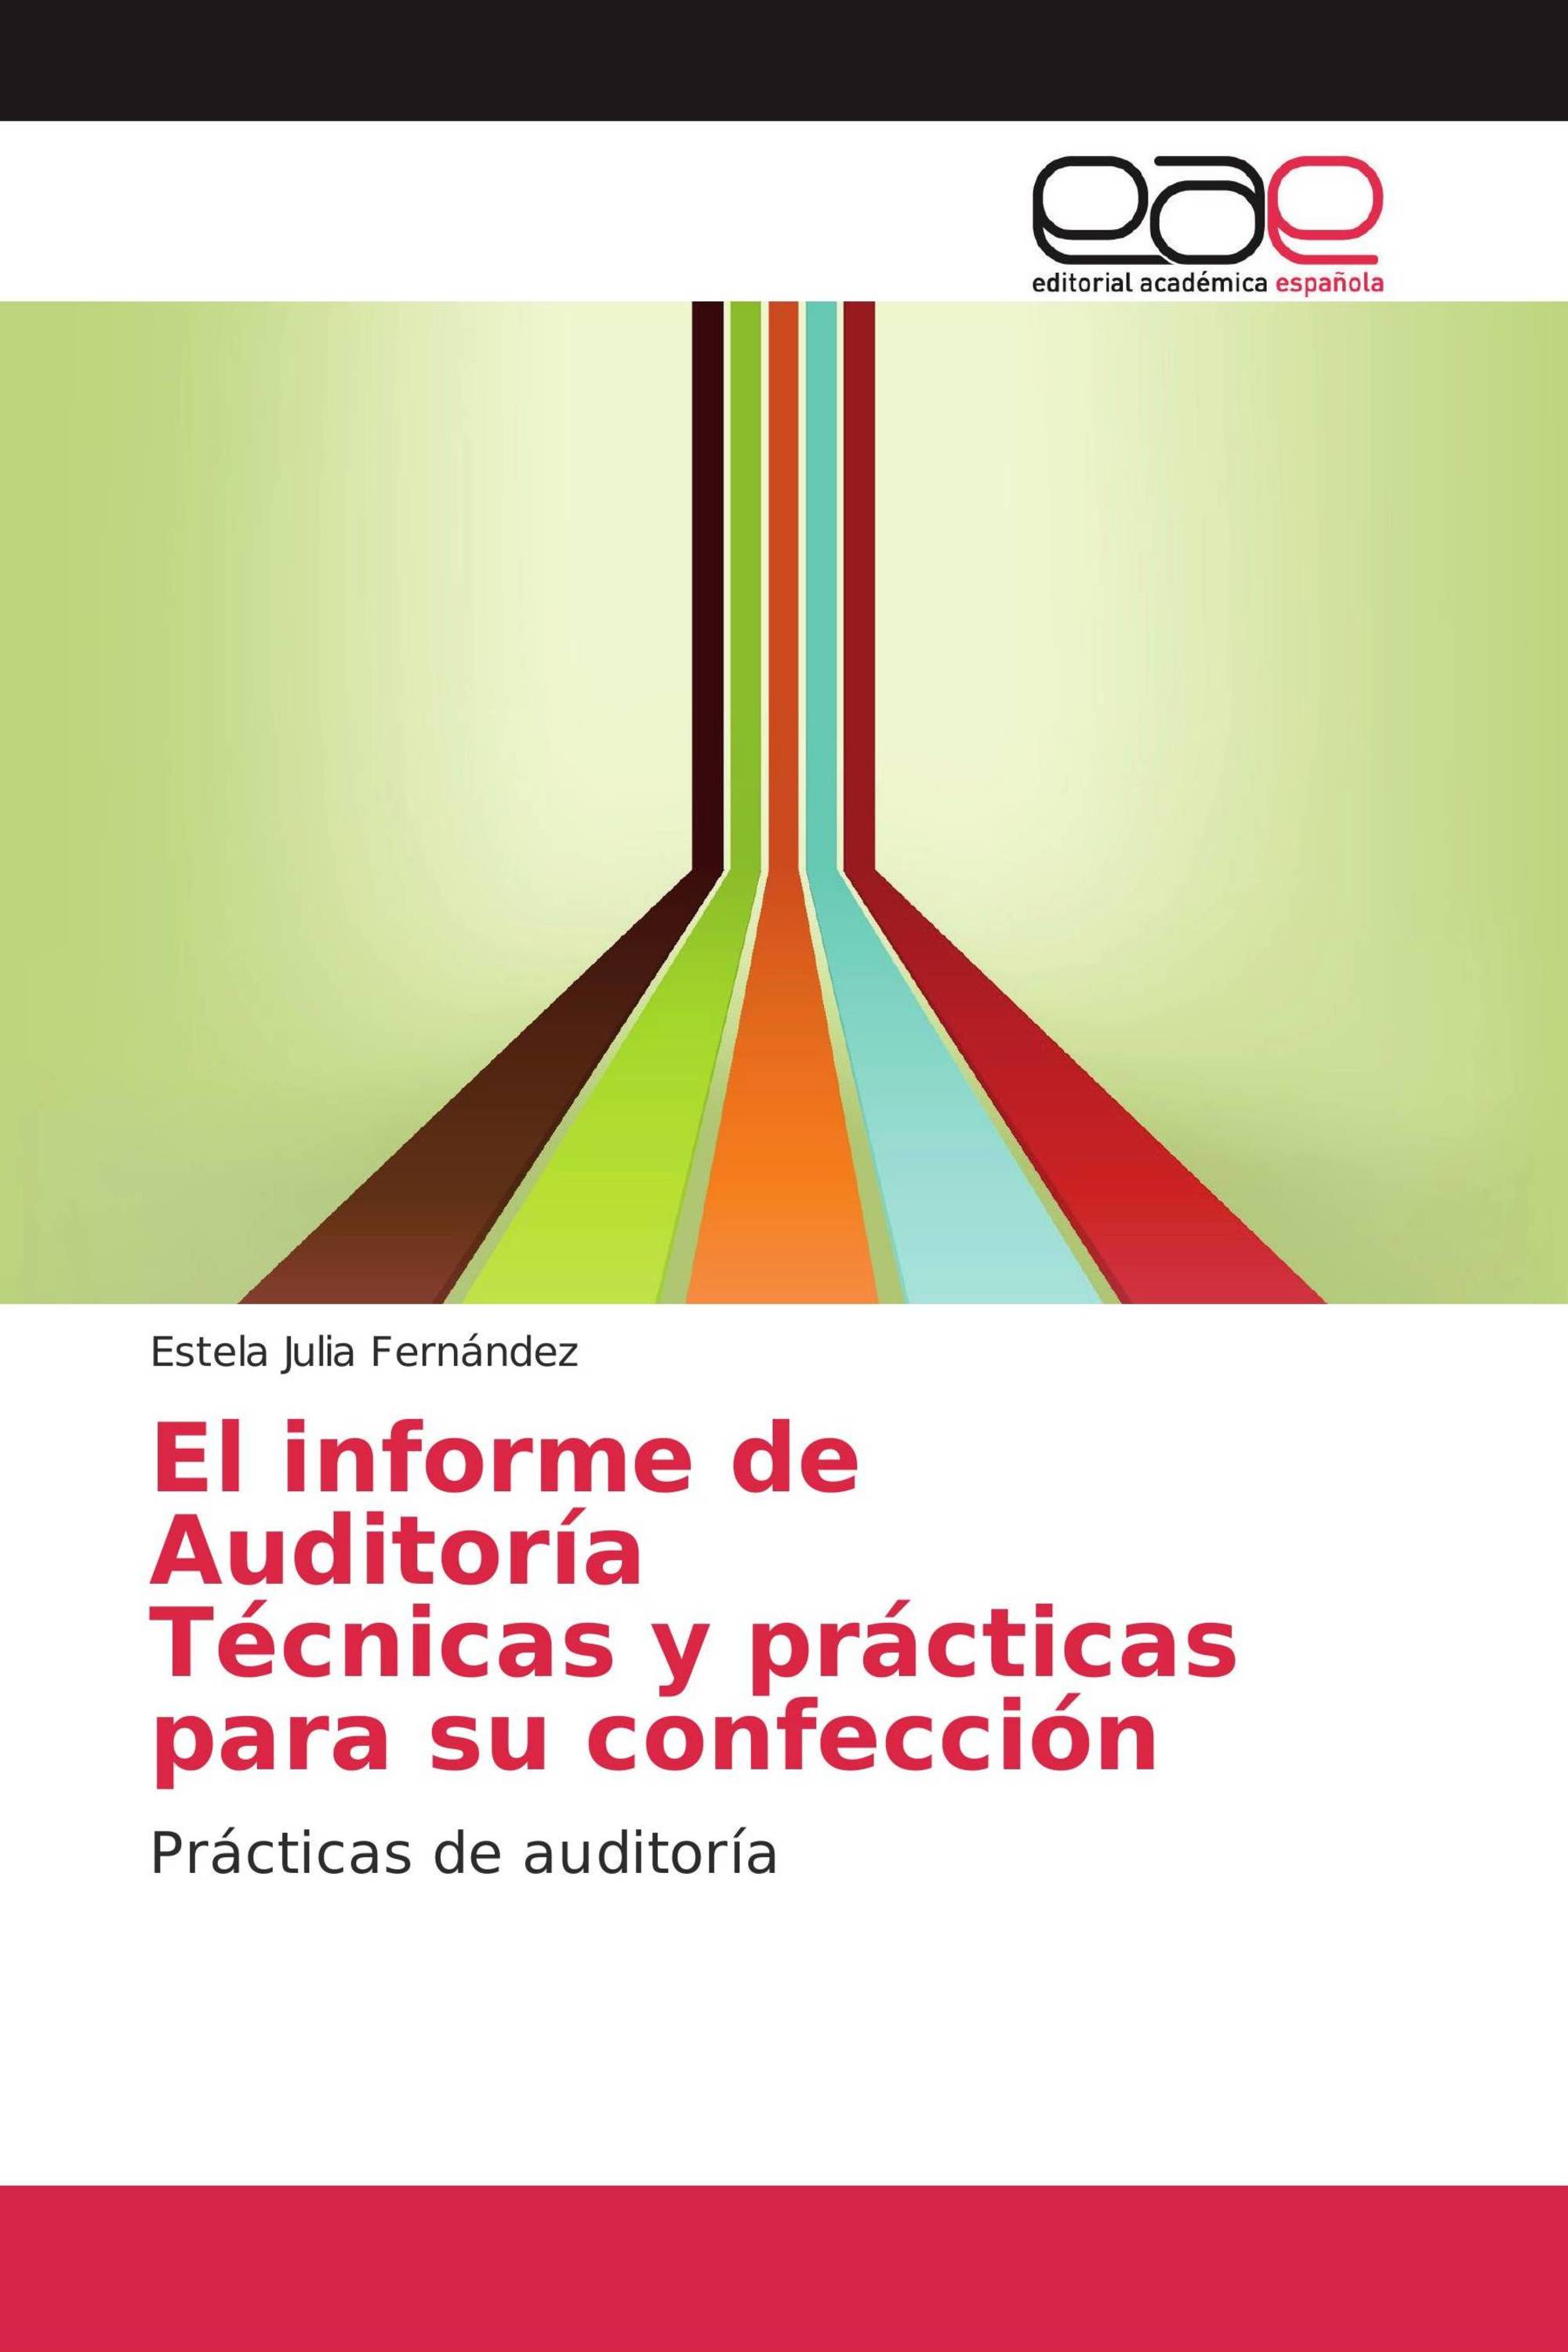 El informe de Auditoría Técnicas y prácticas para su confección